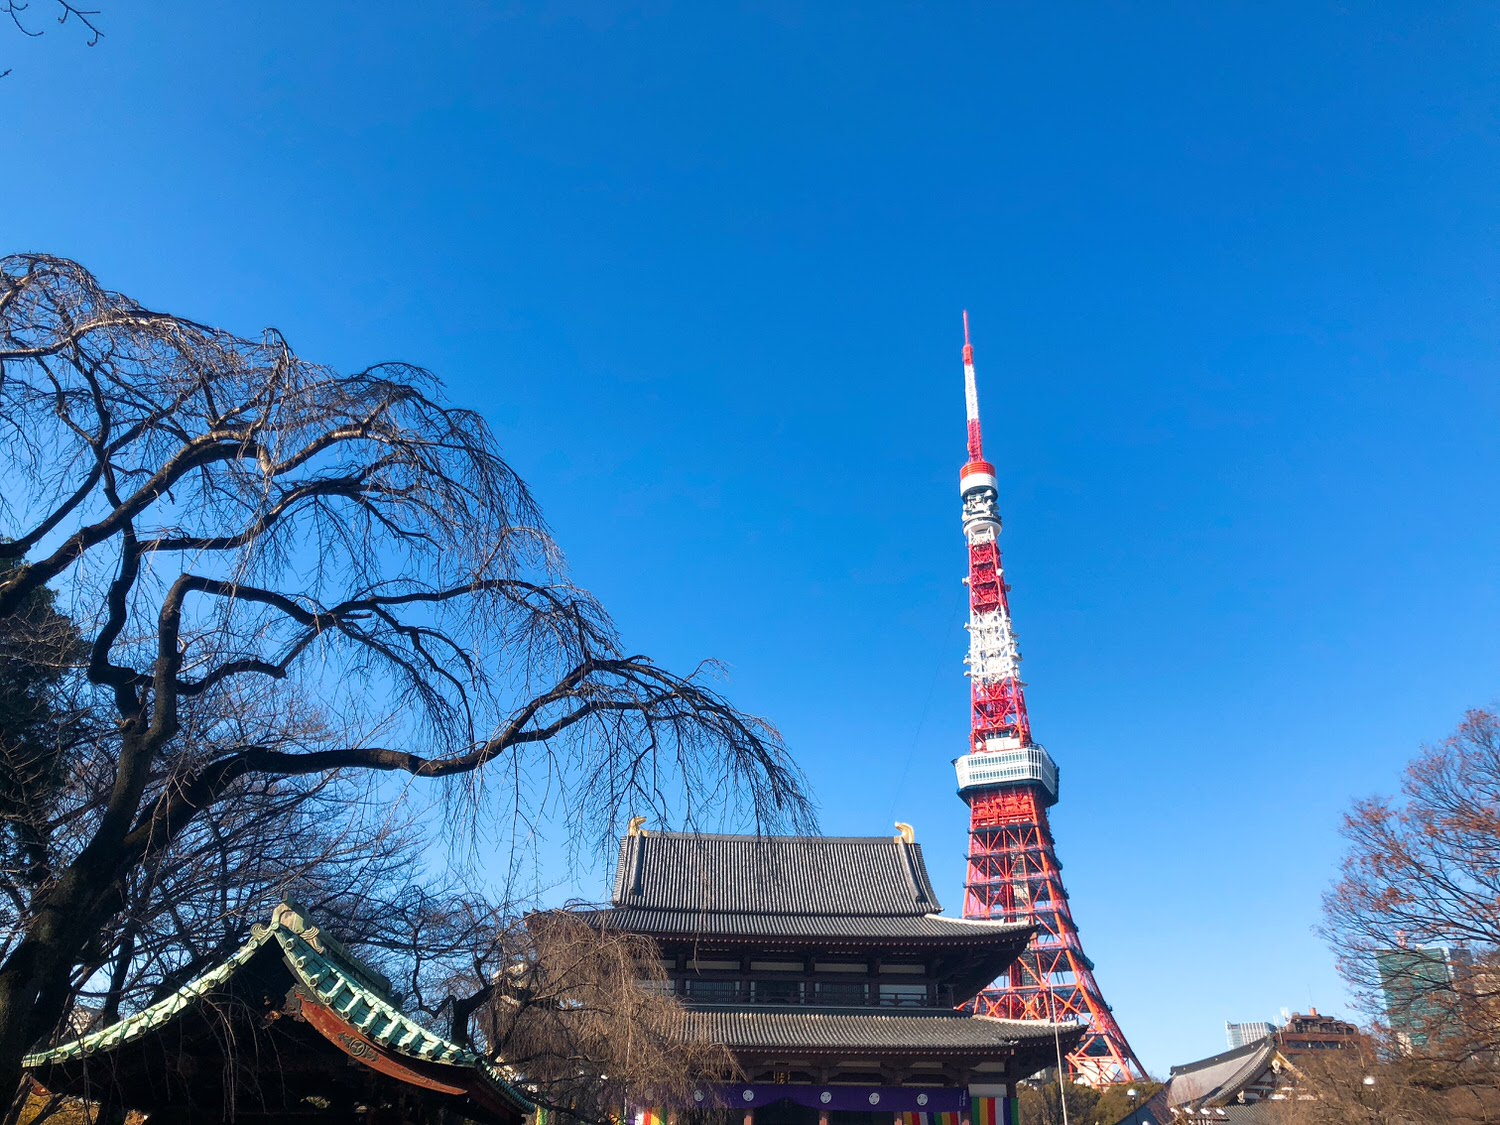  東京鐵塔
芝公園
增上寺